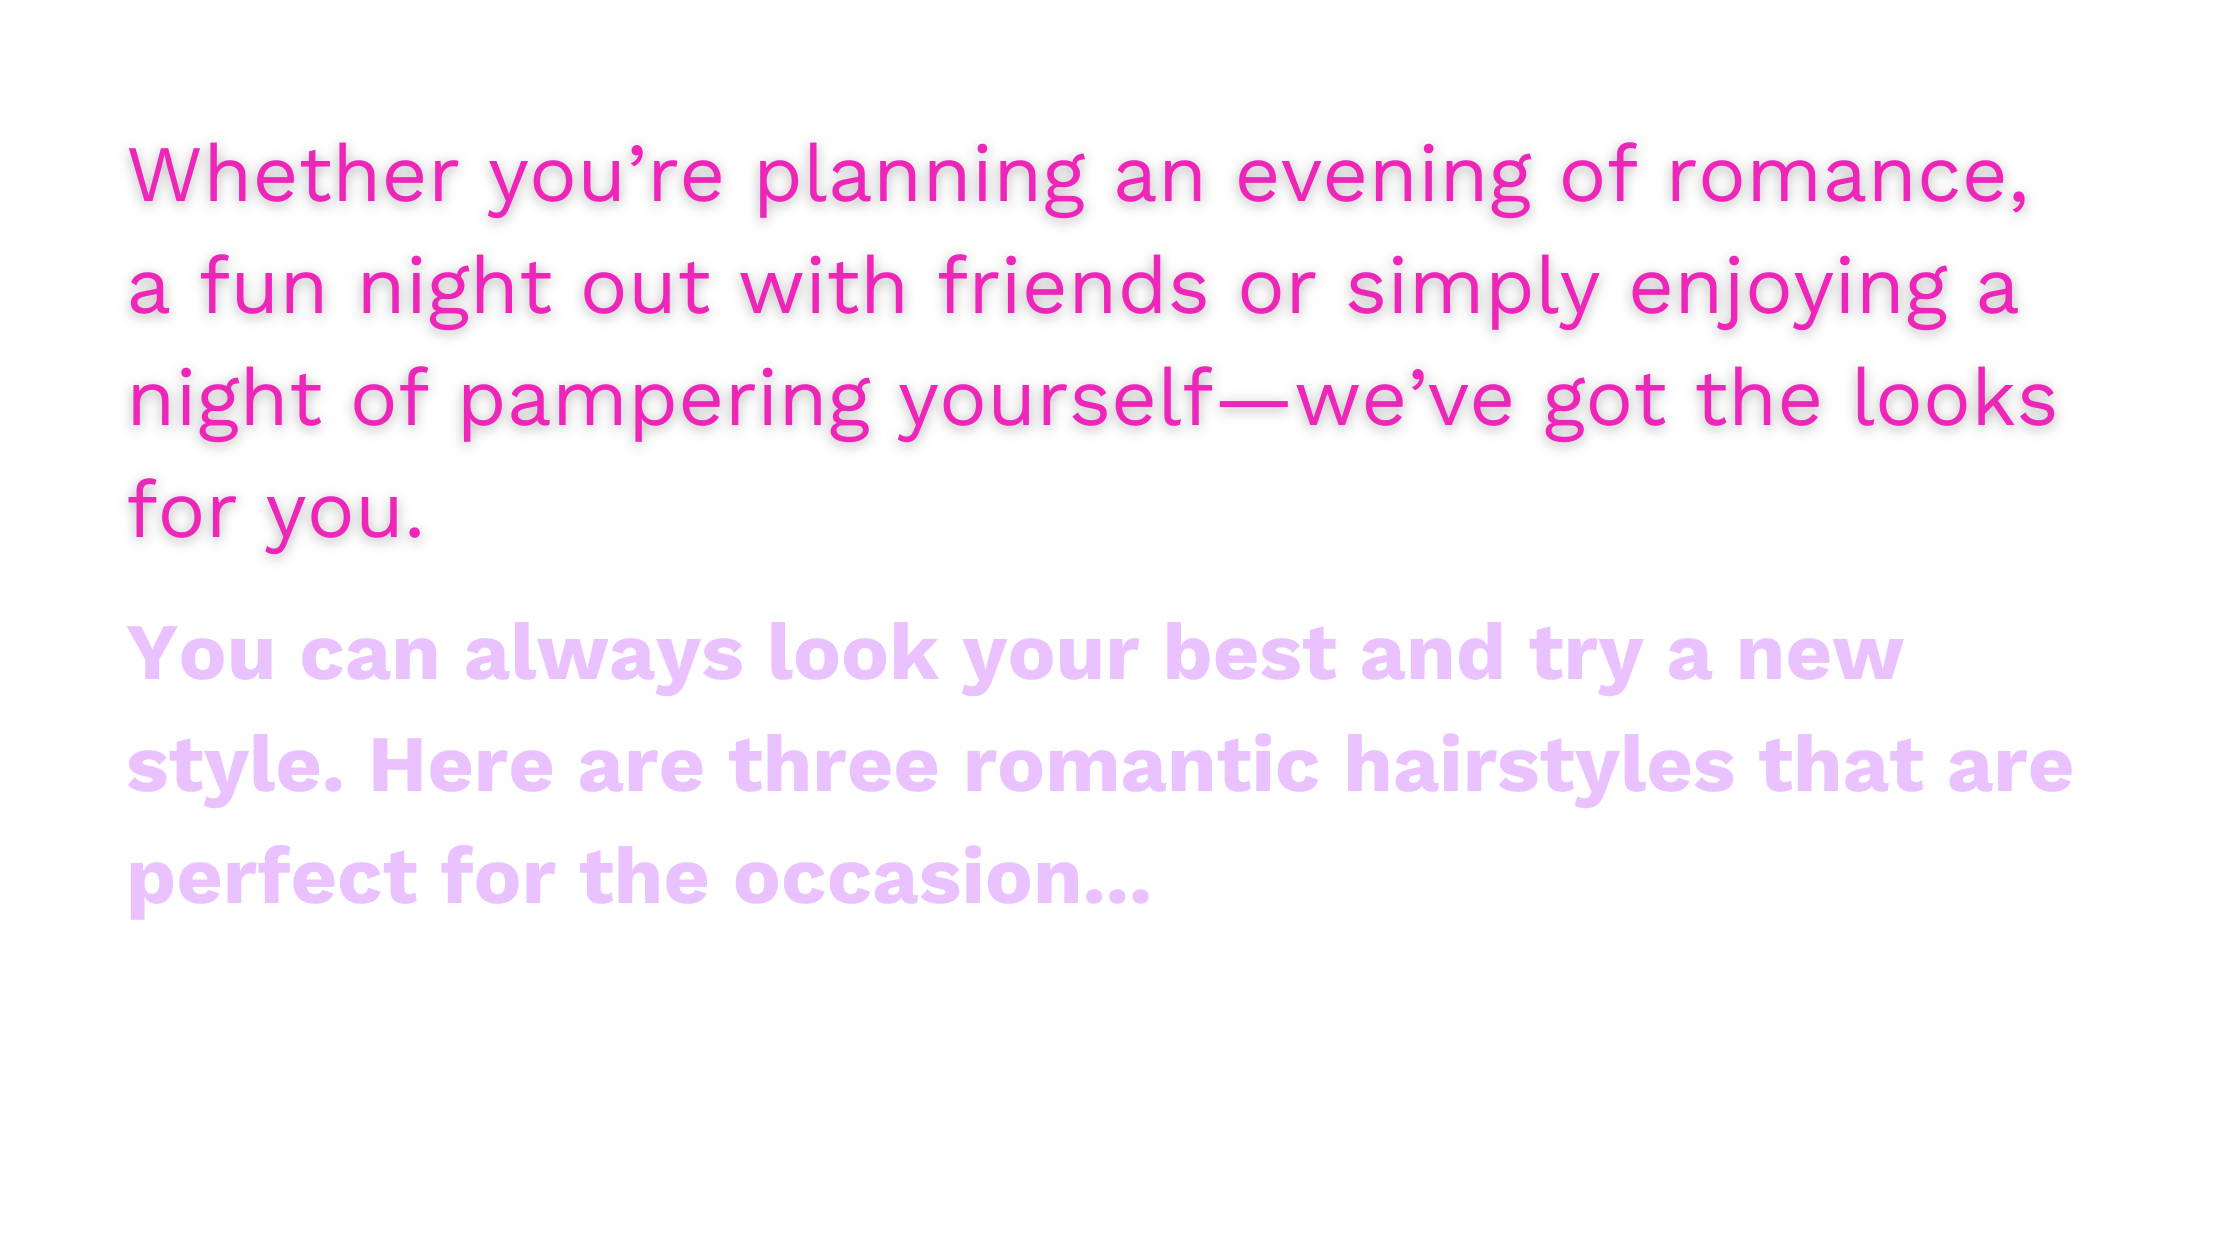 Valentines day hair ideas